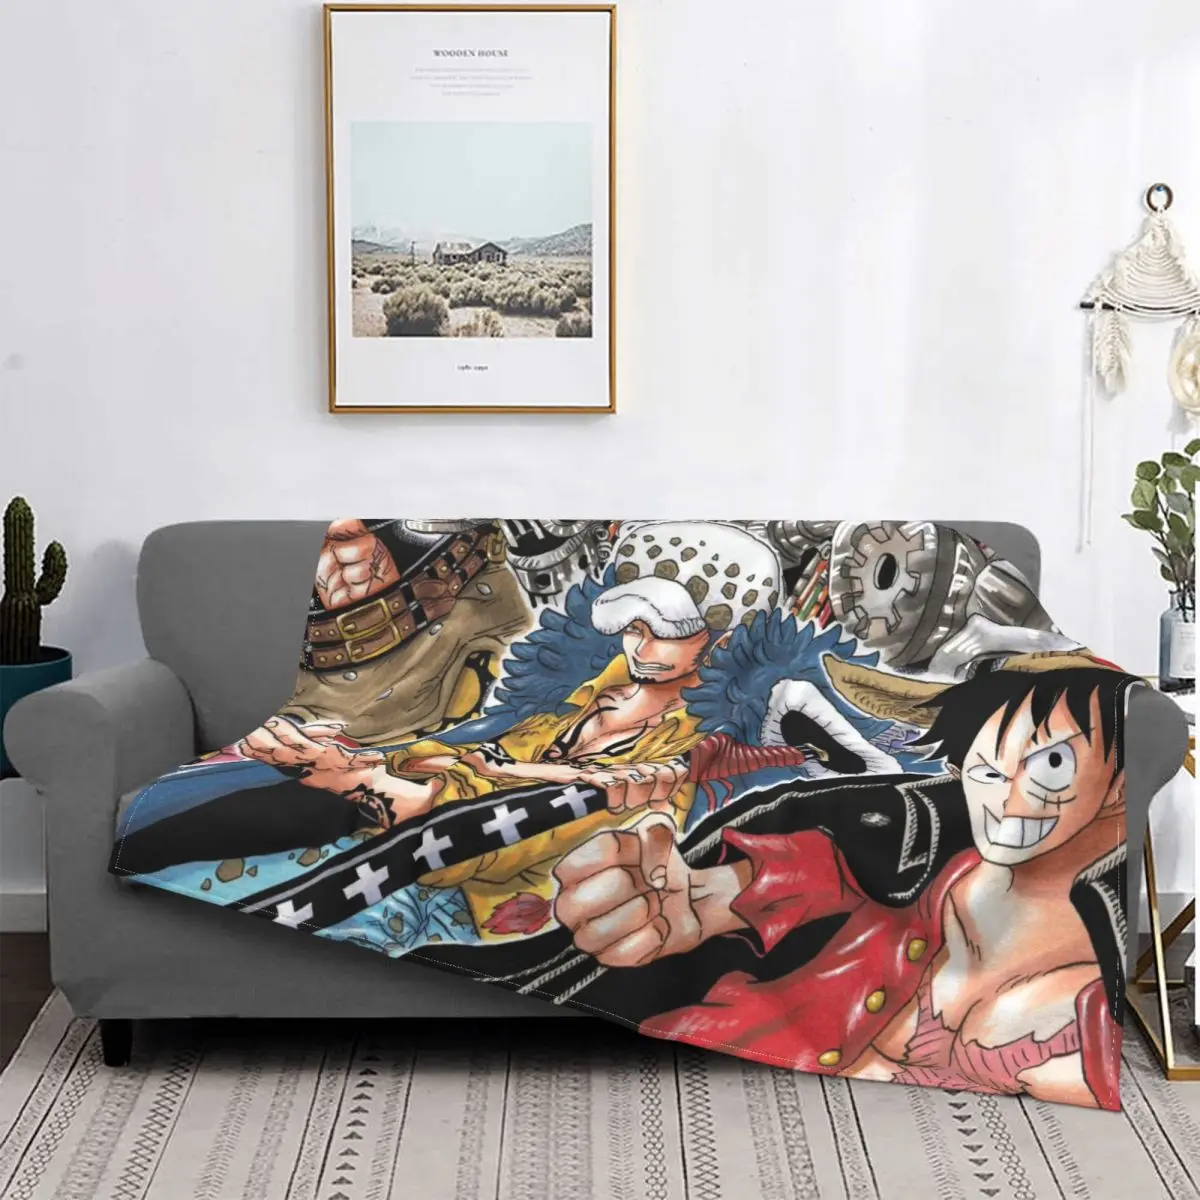 

Цельная обезьянка D. Luffy подростковые аниме борьба портативные теплые пледы одеяла для постельных принадлежностей путешествия